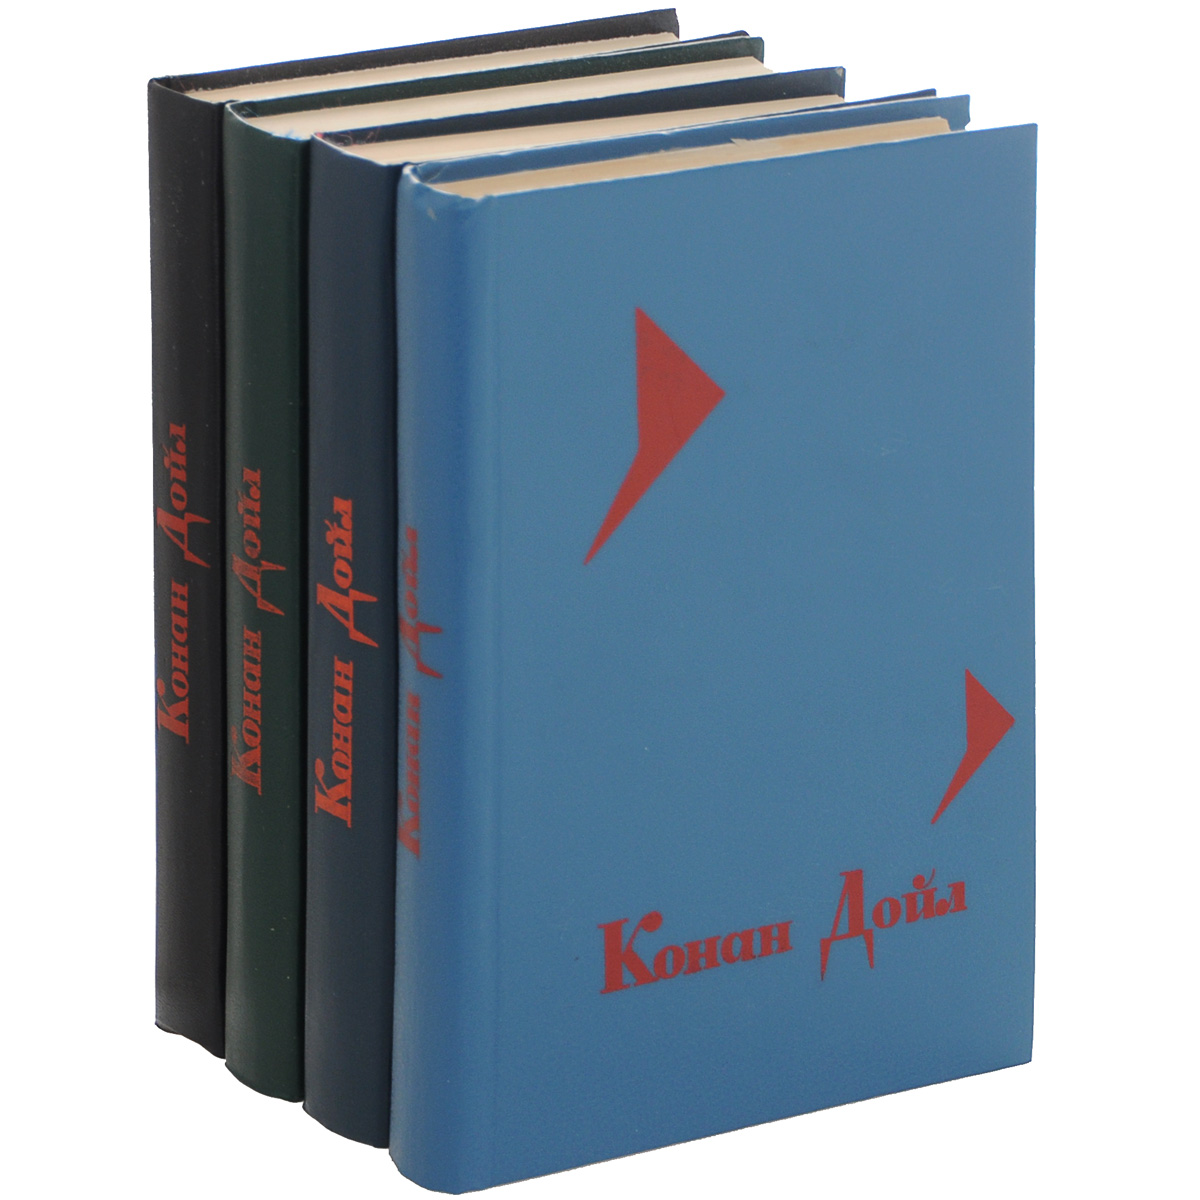 Артур Конан Дойл. Собрание сочинений. В 4 томах (комплект из 4 книг)